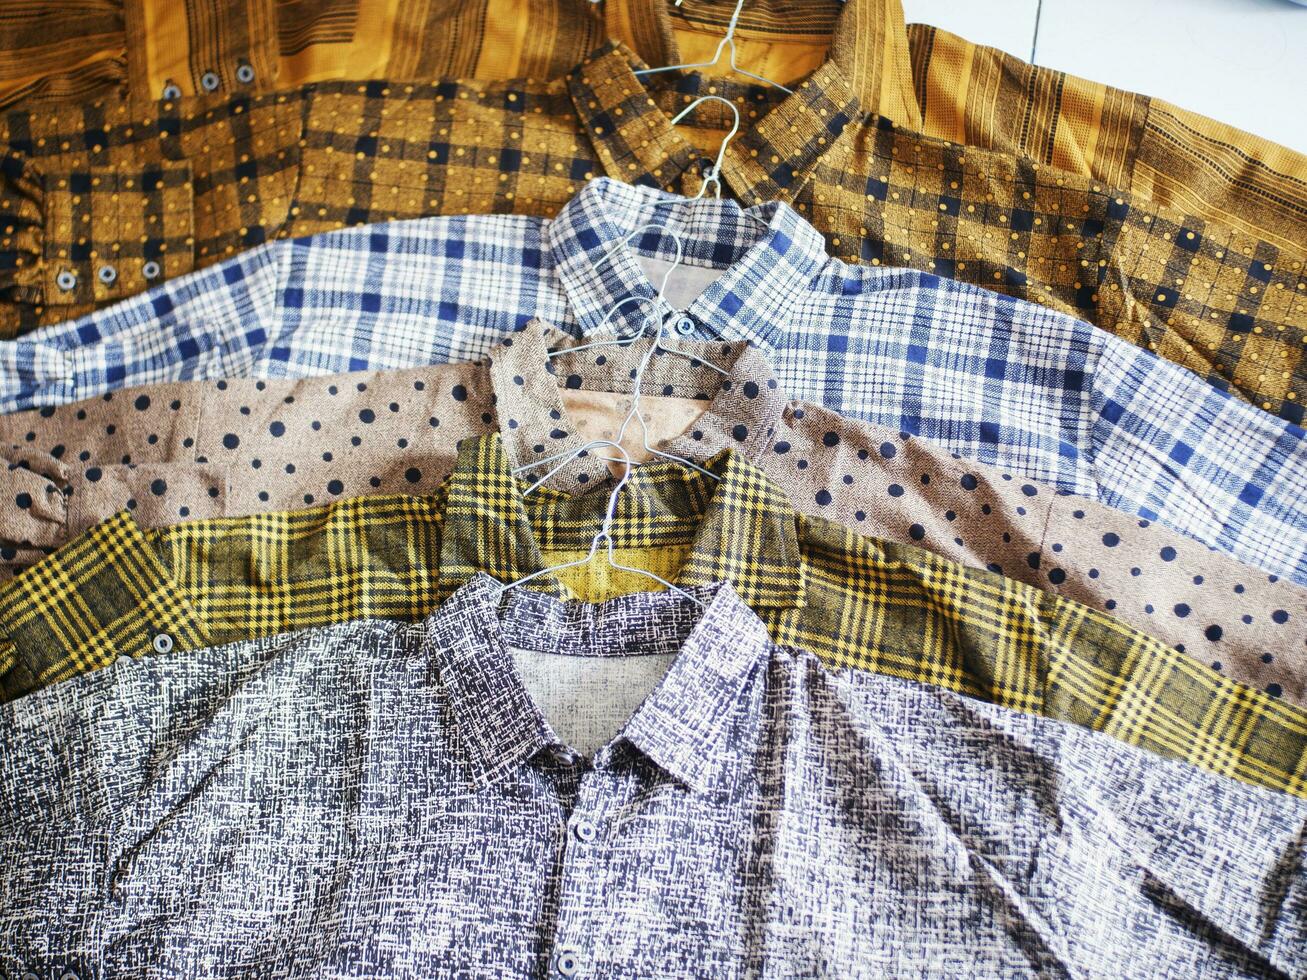 camisas coloridas alineadas ordenadamente. tienda de camisas, camisa abstrac, camisa de lunares foto